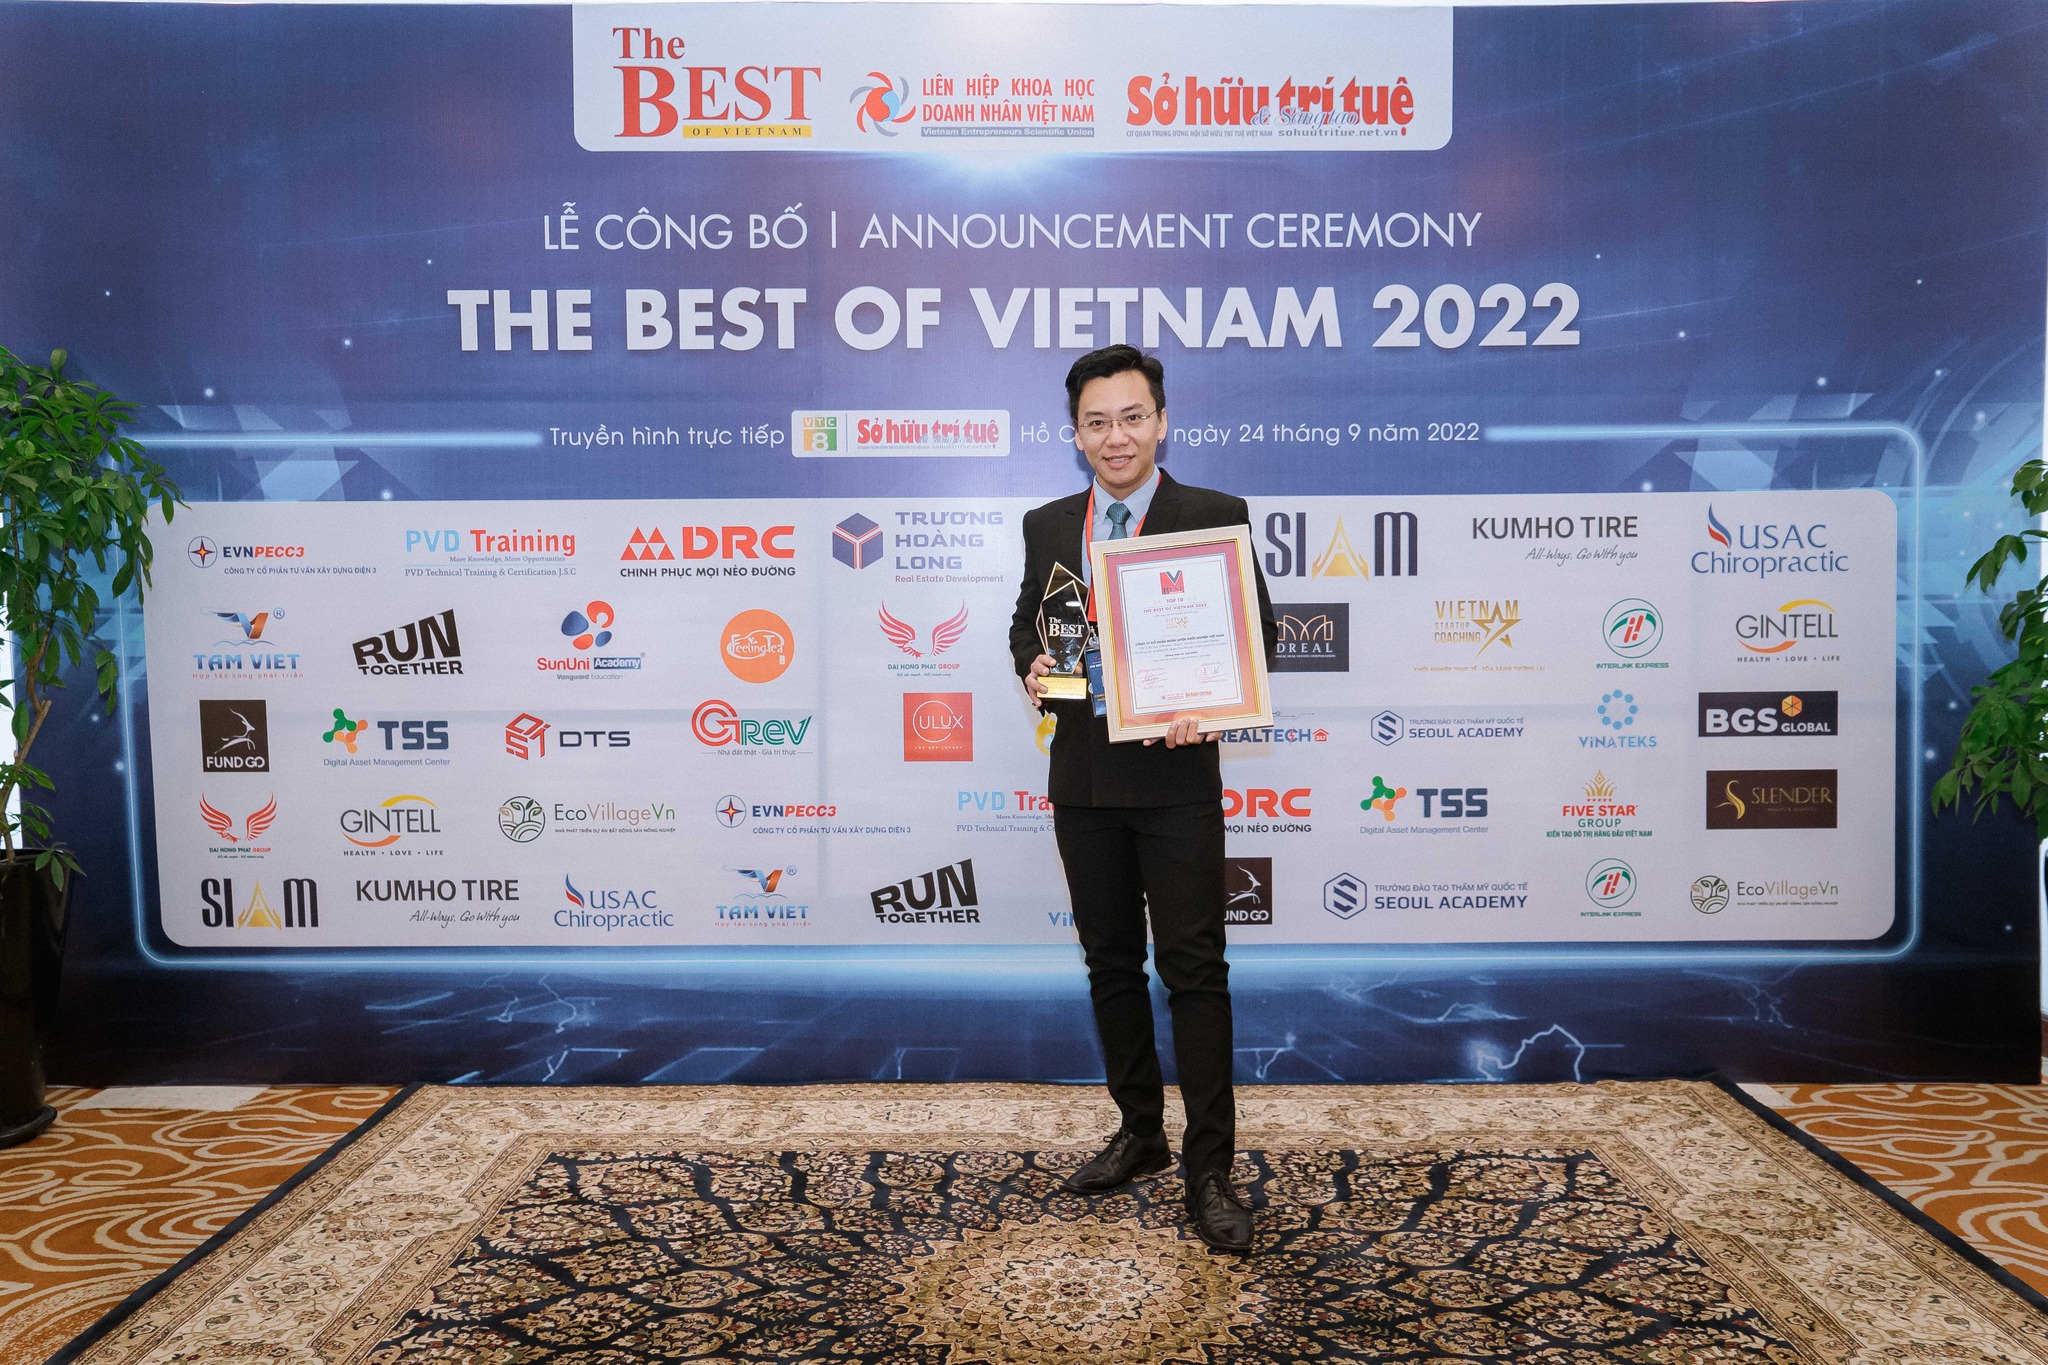 The Best of Vietnam 2022